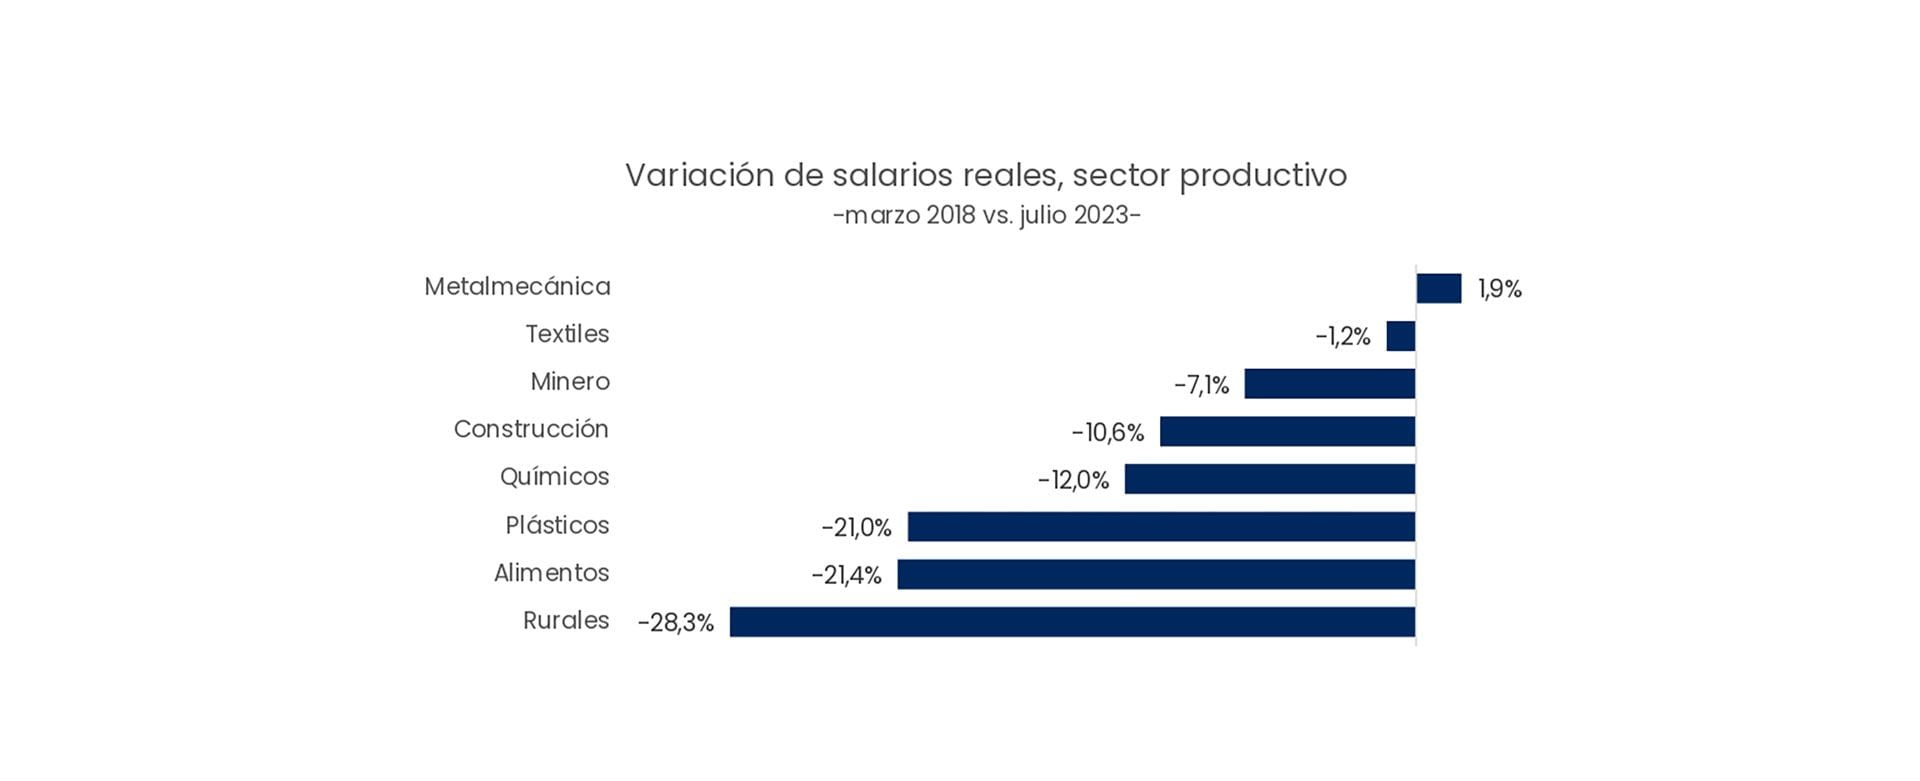 Variación de salarios reales, sector productivo -marzo 2018 vs. julio 2023-
Analytica en base a datos oficiales